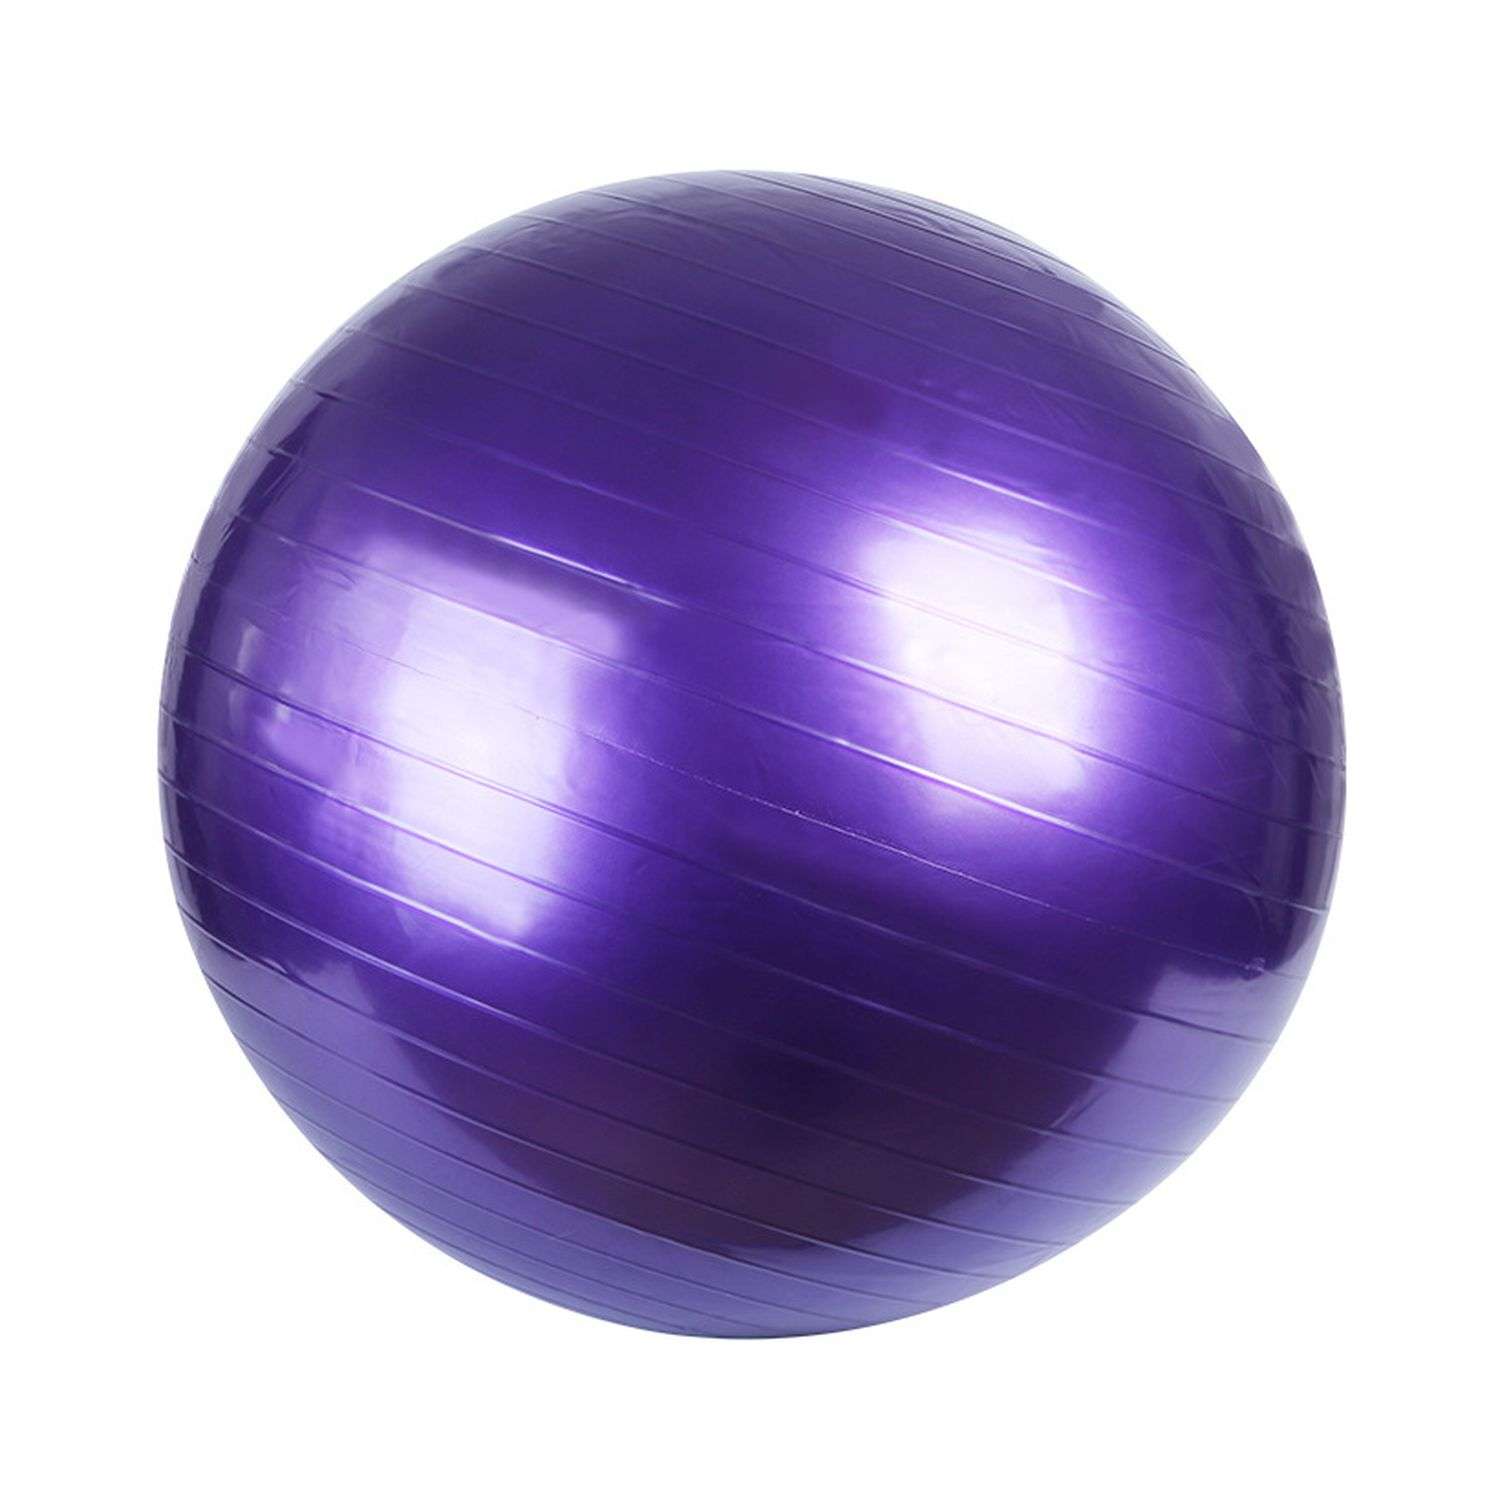 Фитбол Beroma с антивзрывным эффектом 55 см фиолетовый - фото 1